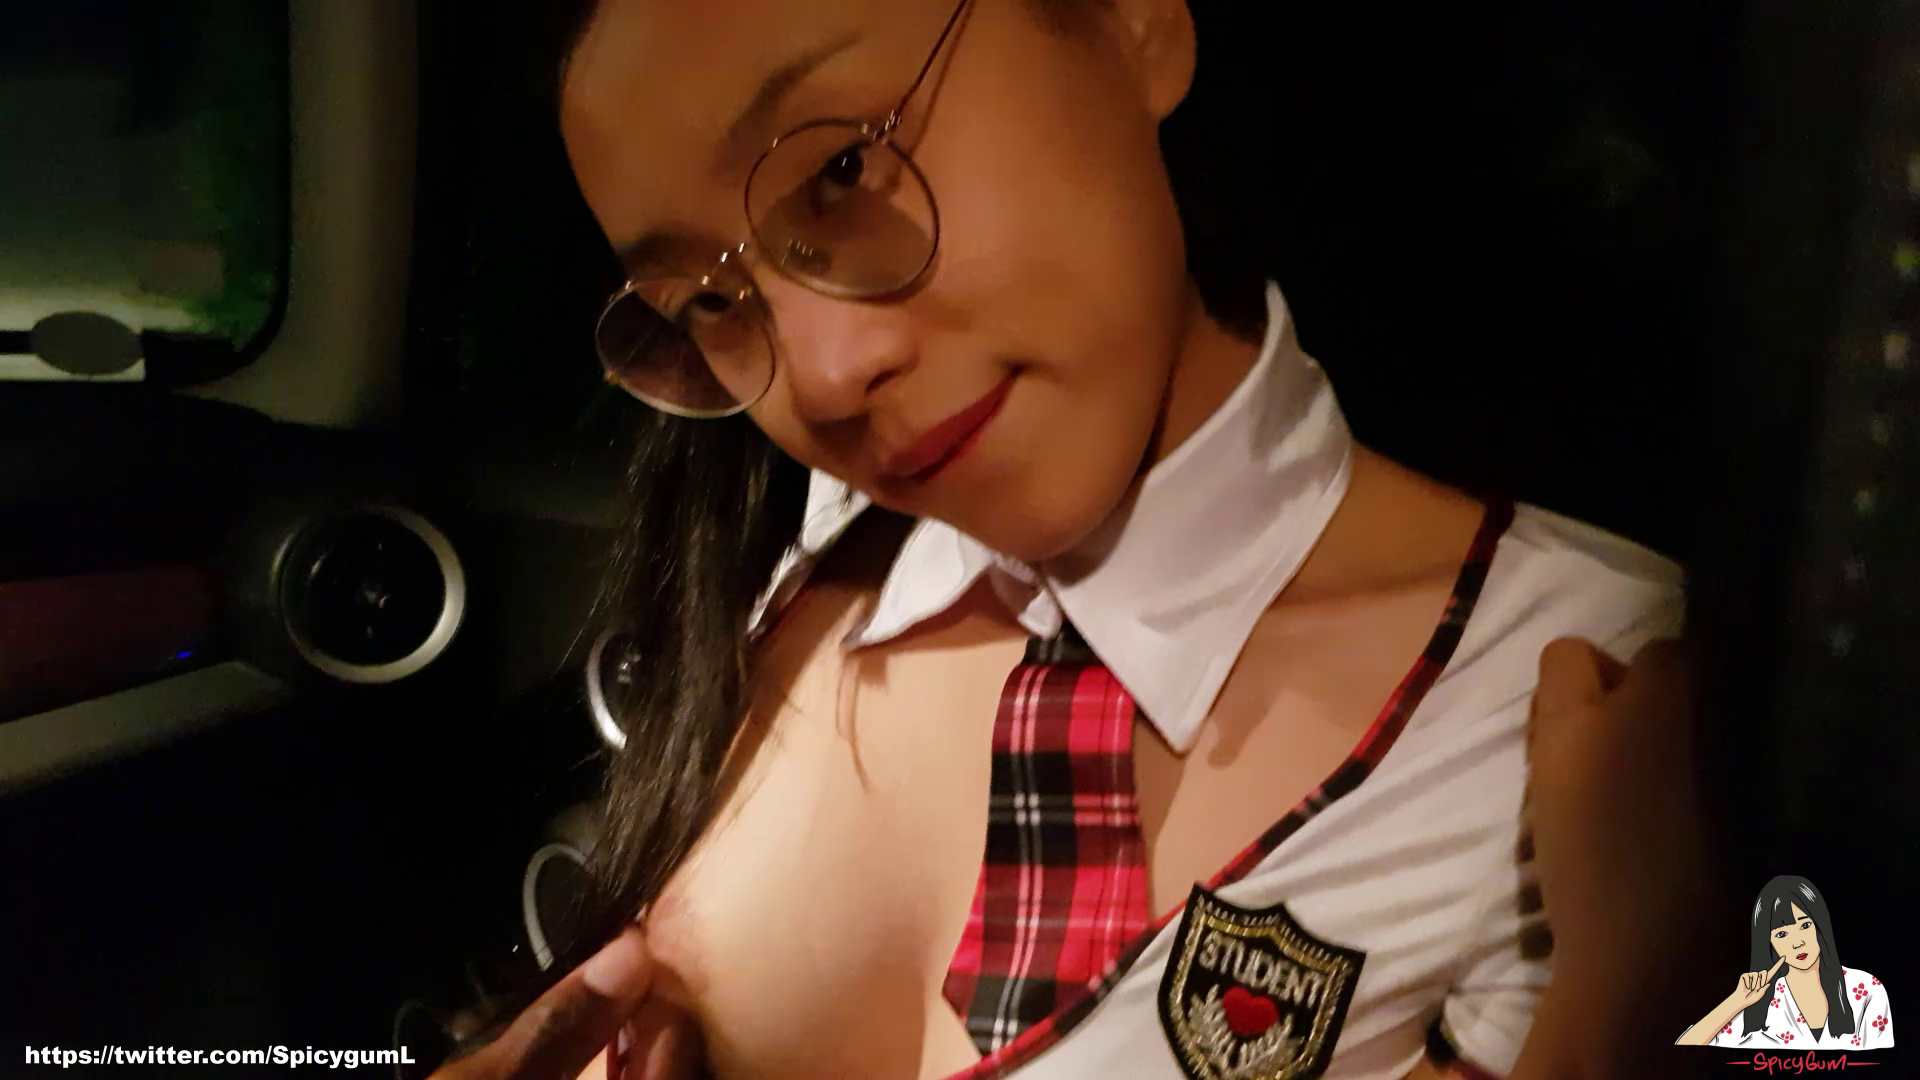 June Liu 刘玥 / SpicyGum - SECRET LIFE - ASIAN GIRL GIRL HOT SEX / SHORT V.